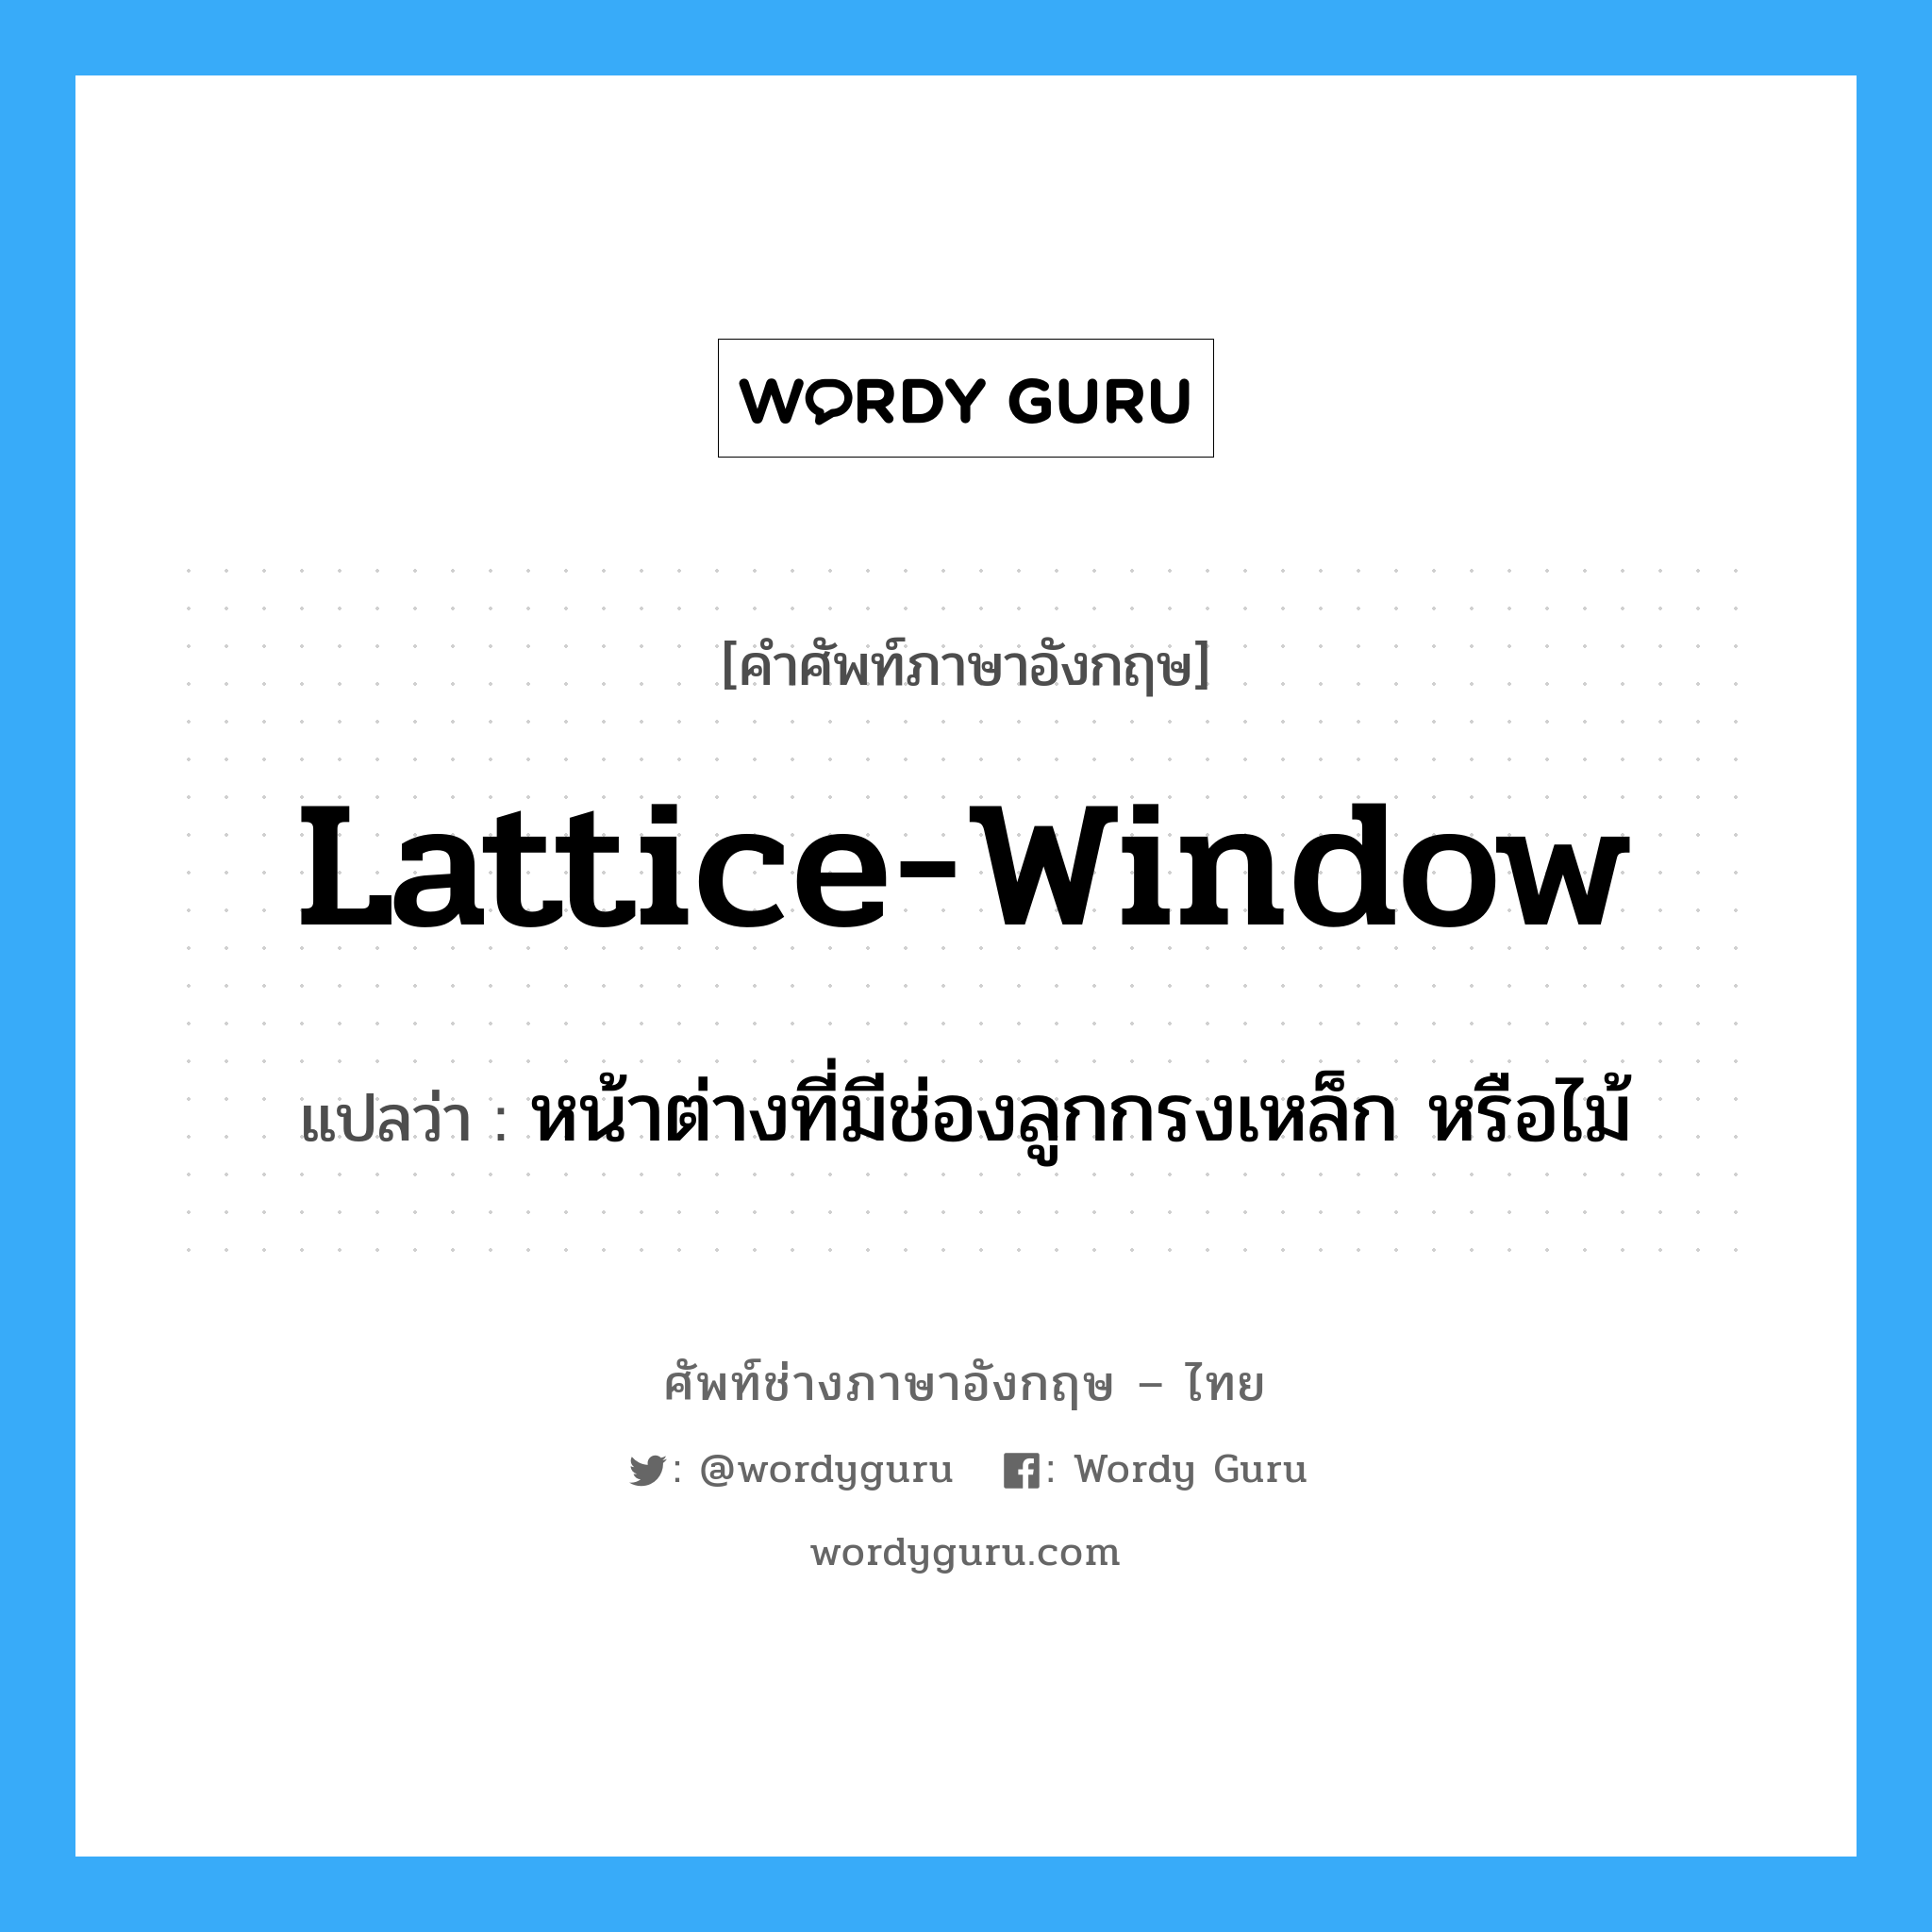 lattice window, แปลว่า?, คำศัพท์ช่างภาษาอังกฤษ - ไทย lattice-window คำศัพท์ภาษาอังกฤษ lattice-window แปลว่า หน้าต่างที่มีช่องลูกกรงเหล็ก หรือไม้